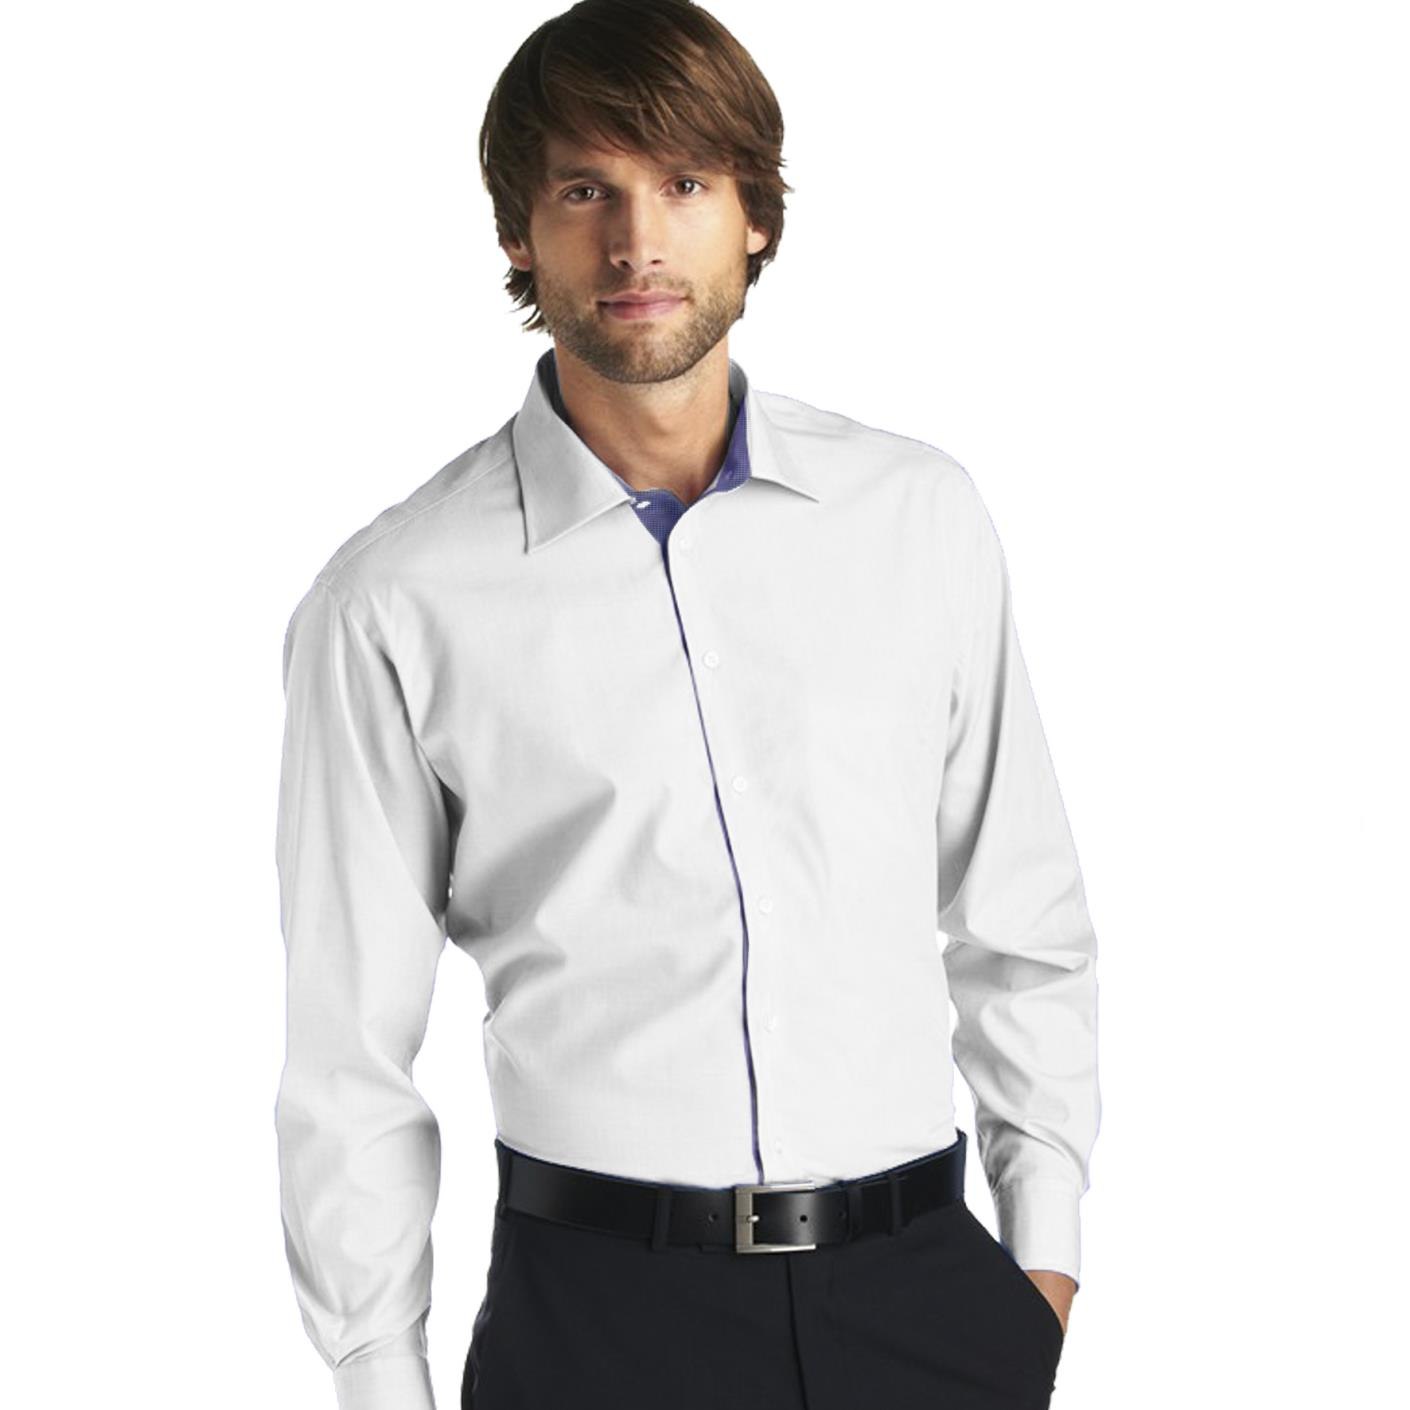 Купить рубашку мужскую с длинным рукавом классическую. Рубашка мужская. Белая рубашка. Мужская белая рубашка. Рубашка мужская с длинным рукавом.